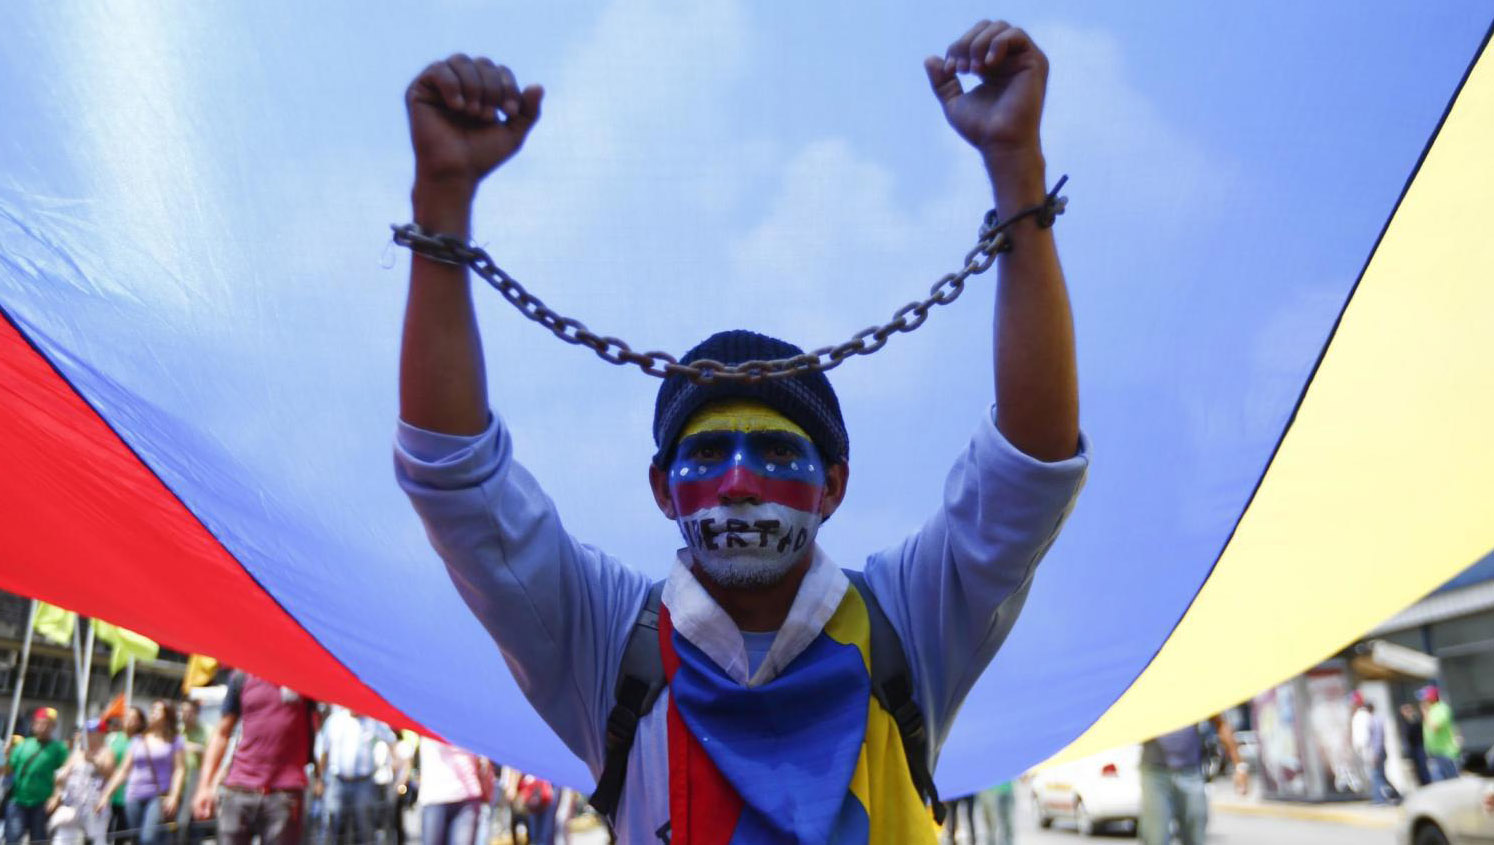 La organización venezolana pide apegarse a la ley para resolver la crisis que atraviesa la nación